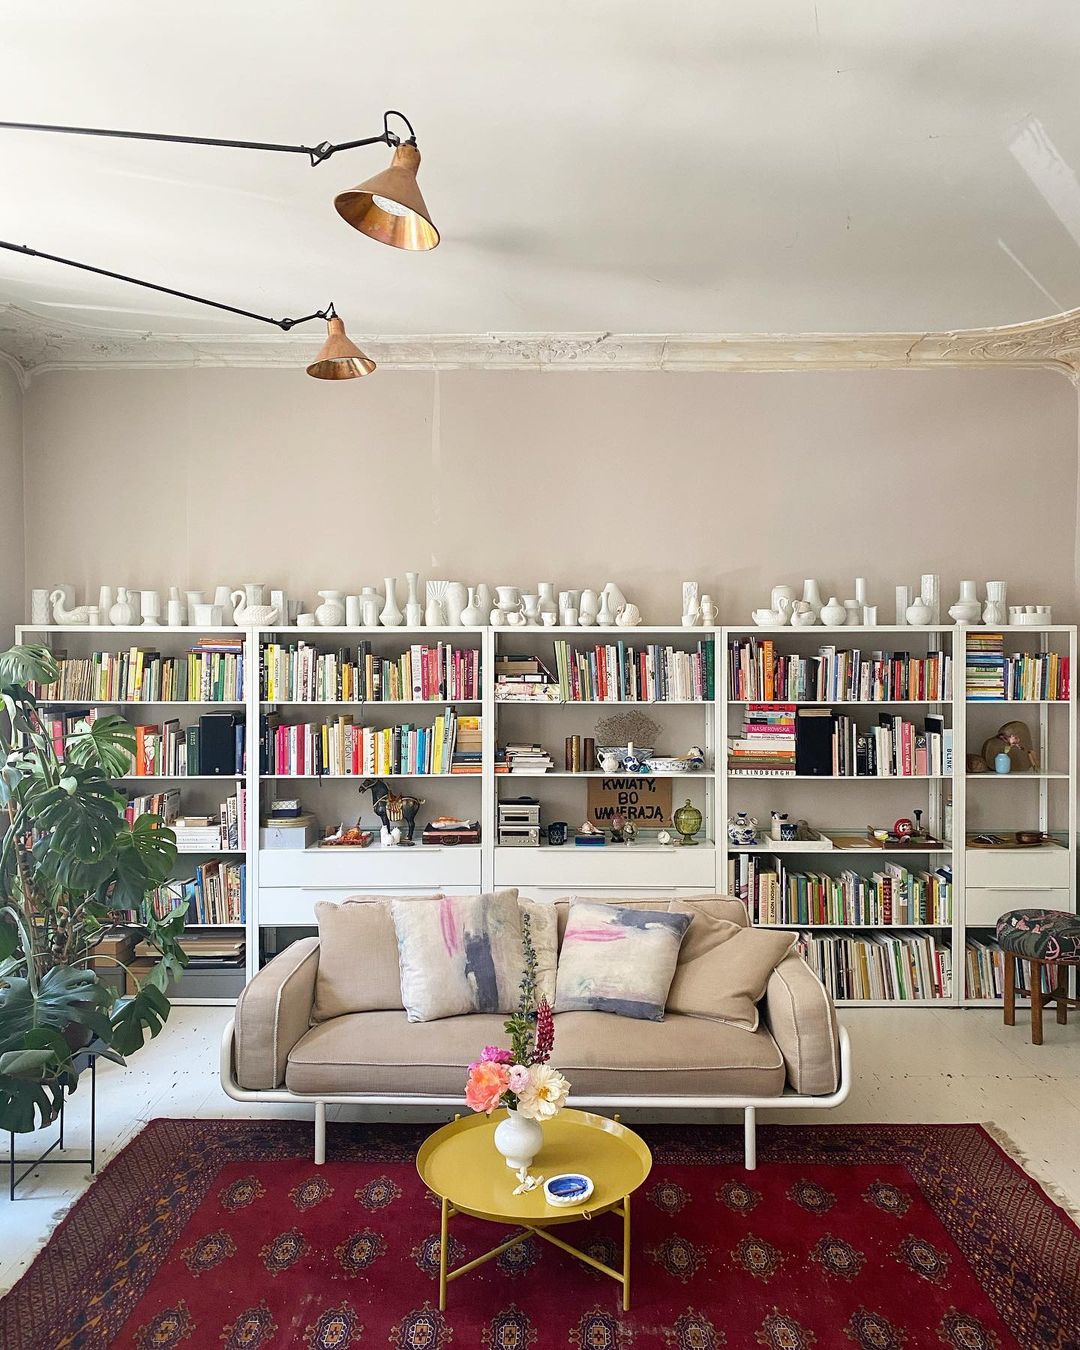 Phòng khách là nơi được chủ nhân bố trí ghế sofa màu be êm ái nổi bật trên tấm thảm trải sàn họa tiết cùng sắc đỏ mận nổi bật. Phía sau là kệ lưu trữ hoành tráng với rất nhiều sách, tạp chí cũng như bộ sưu tập đồ trang trí của cả hai.